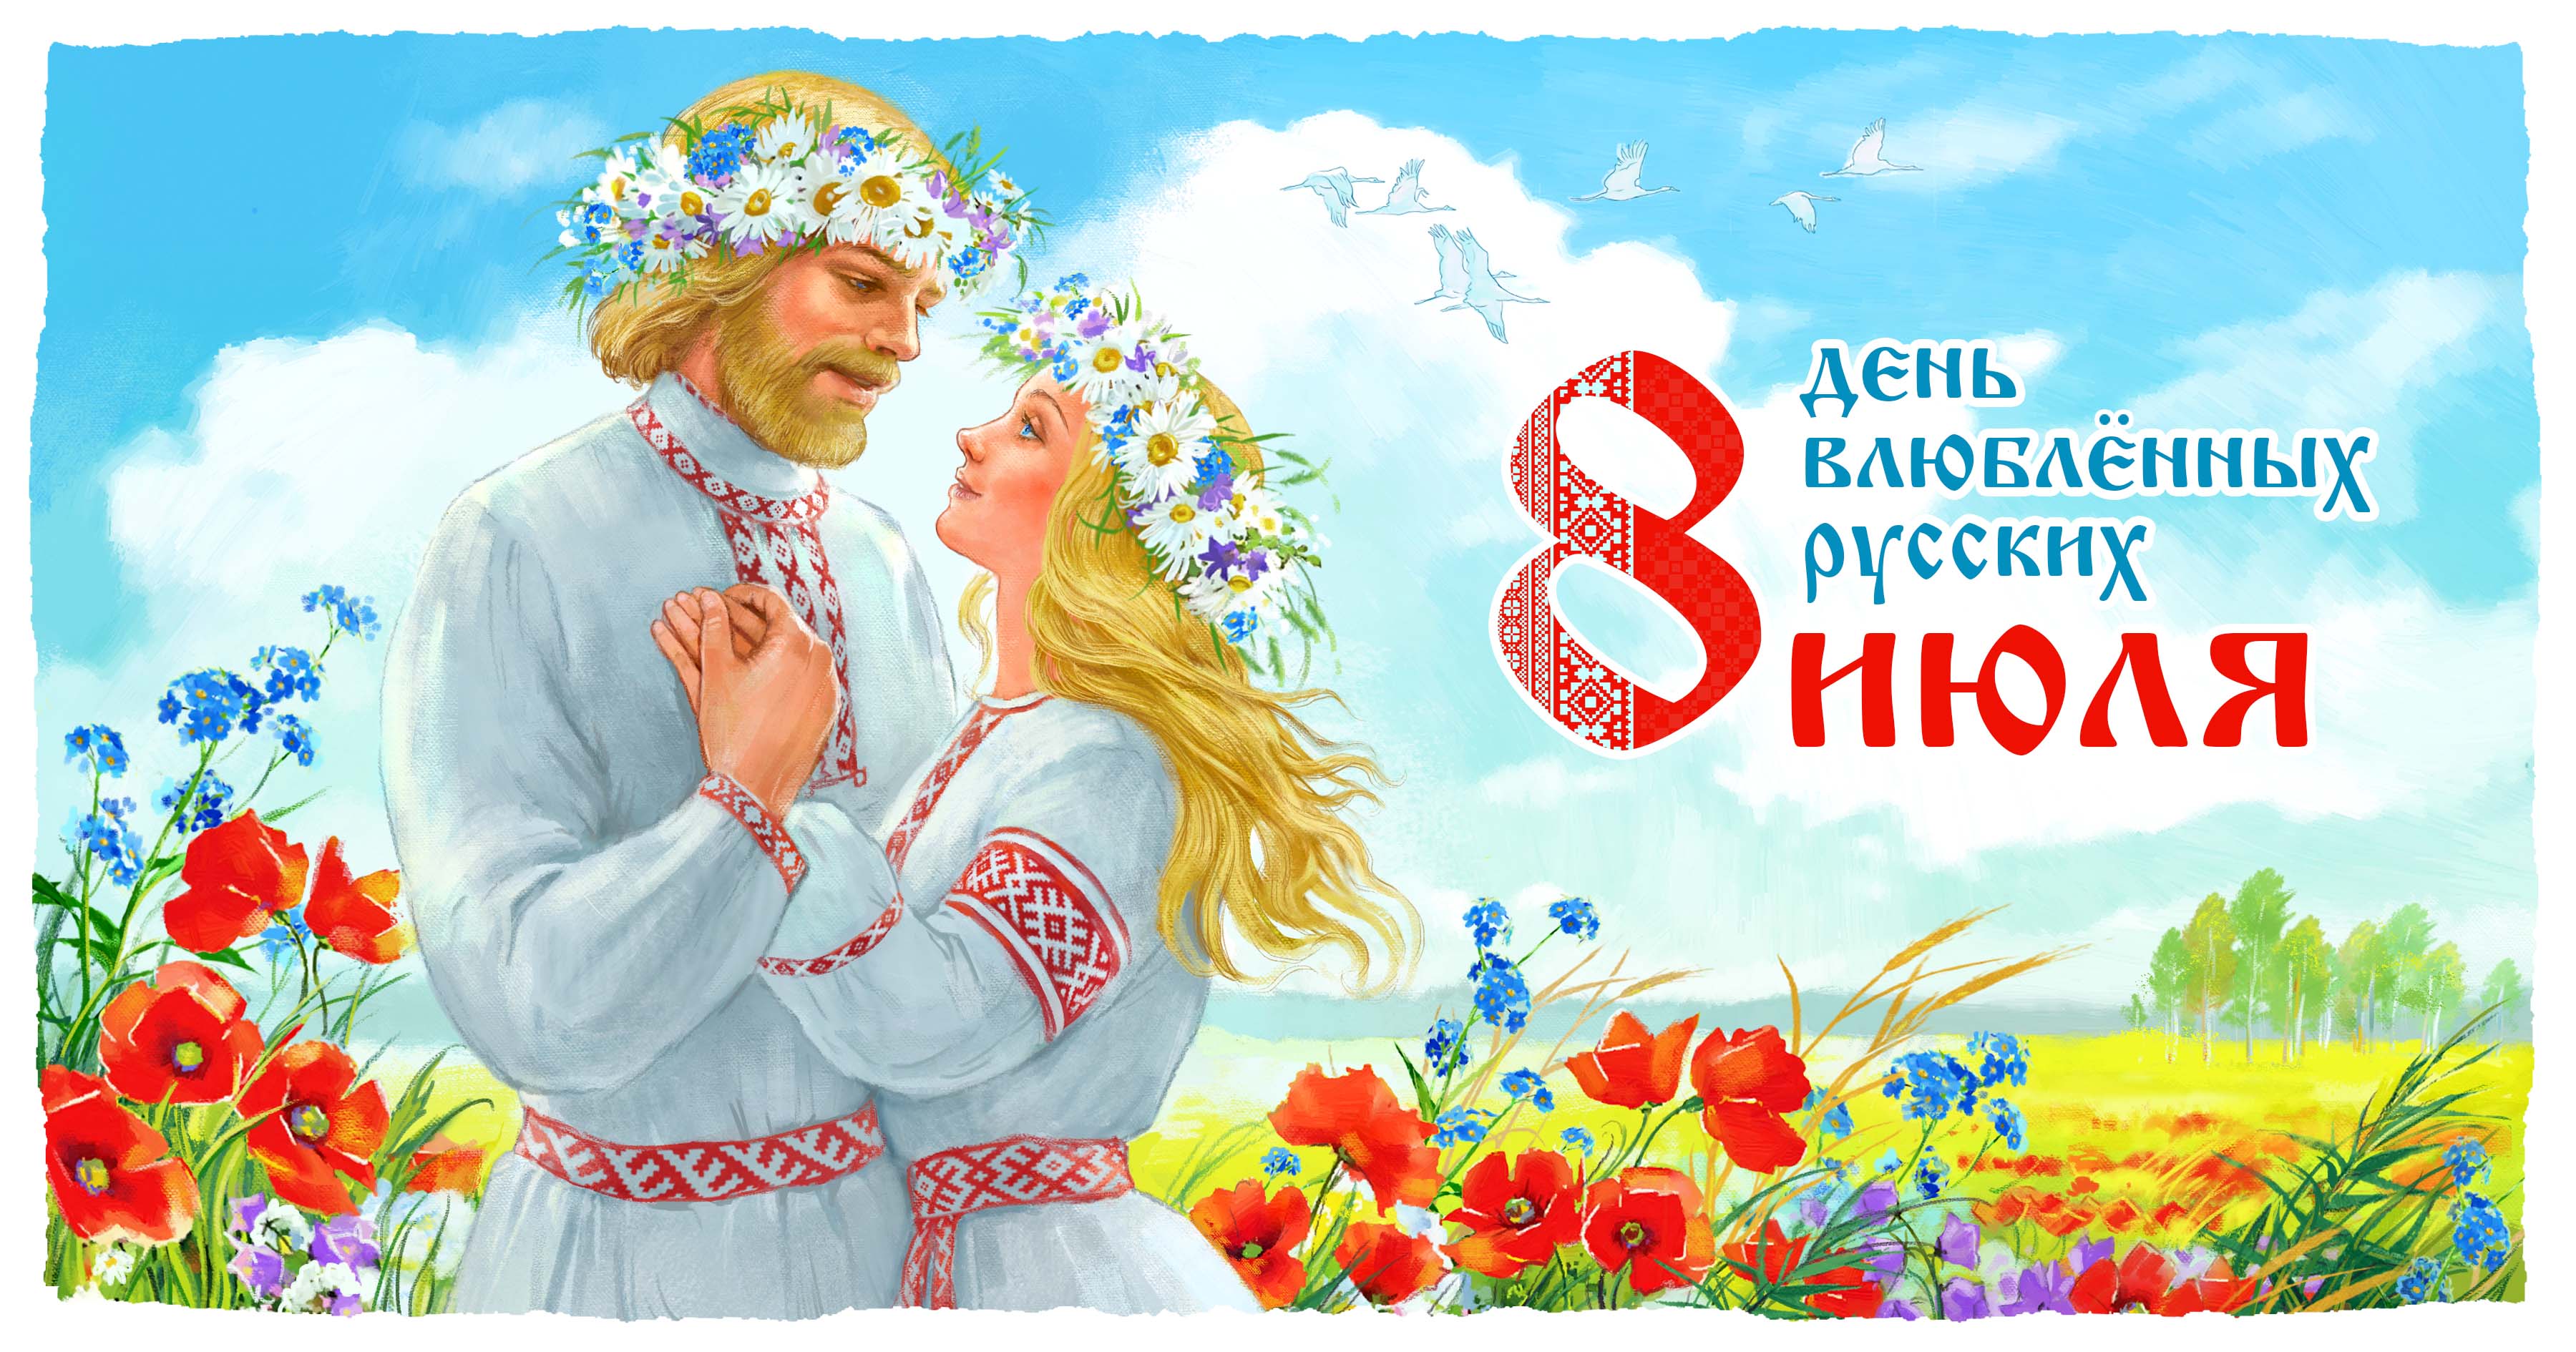 Русские празднуют День Влюблённых 8 июля